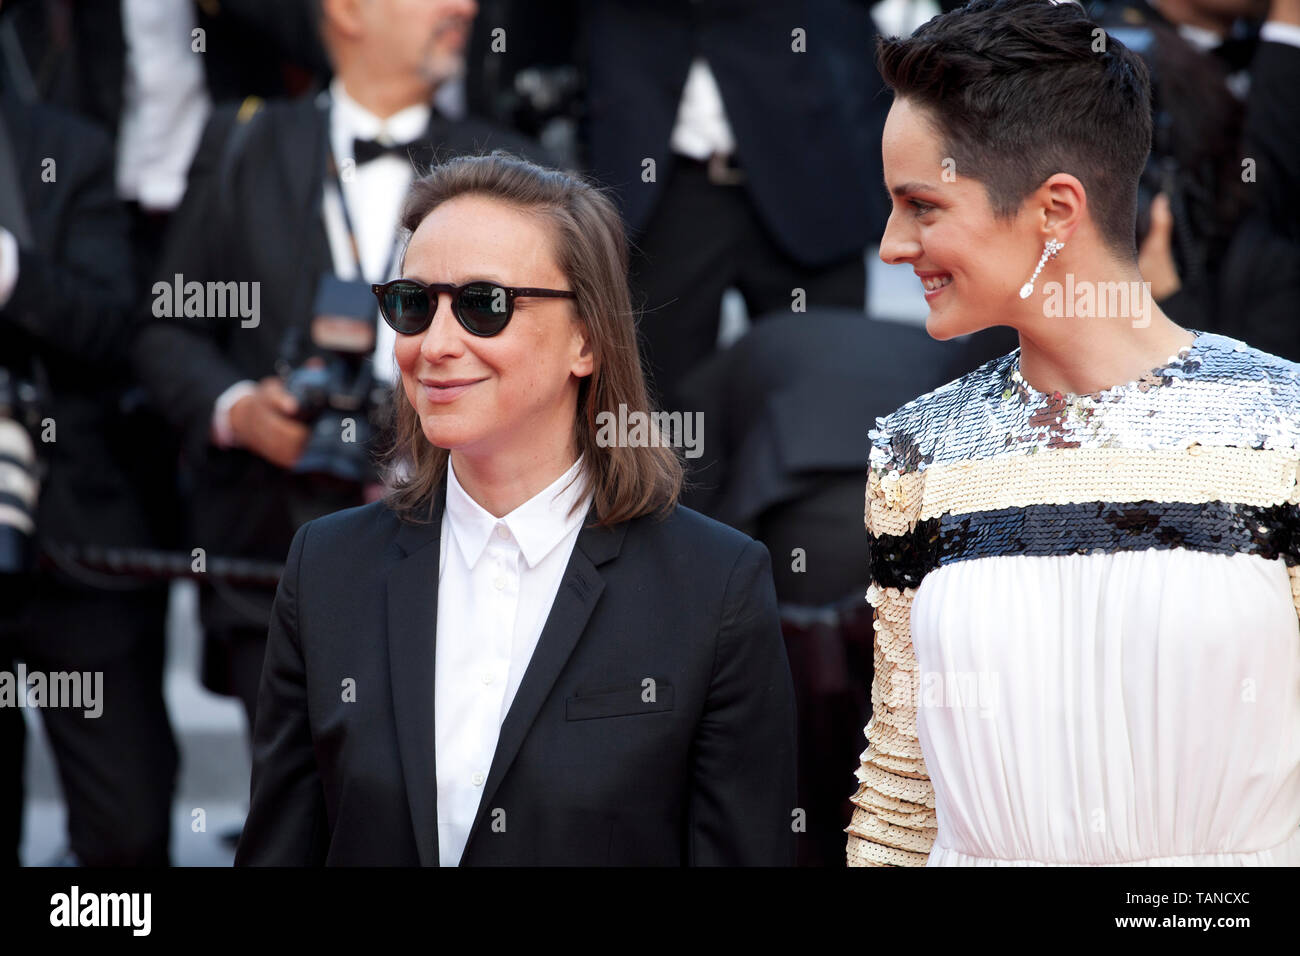 Cannes 2021: Noémie Merlant on Céline Sciamma, Nicolas Ghesquière – WWD